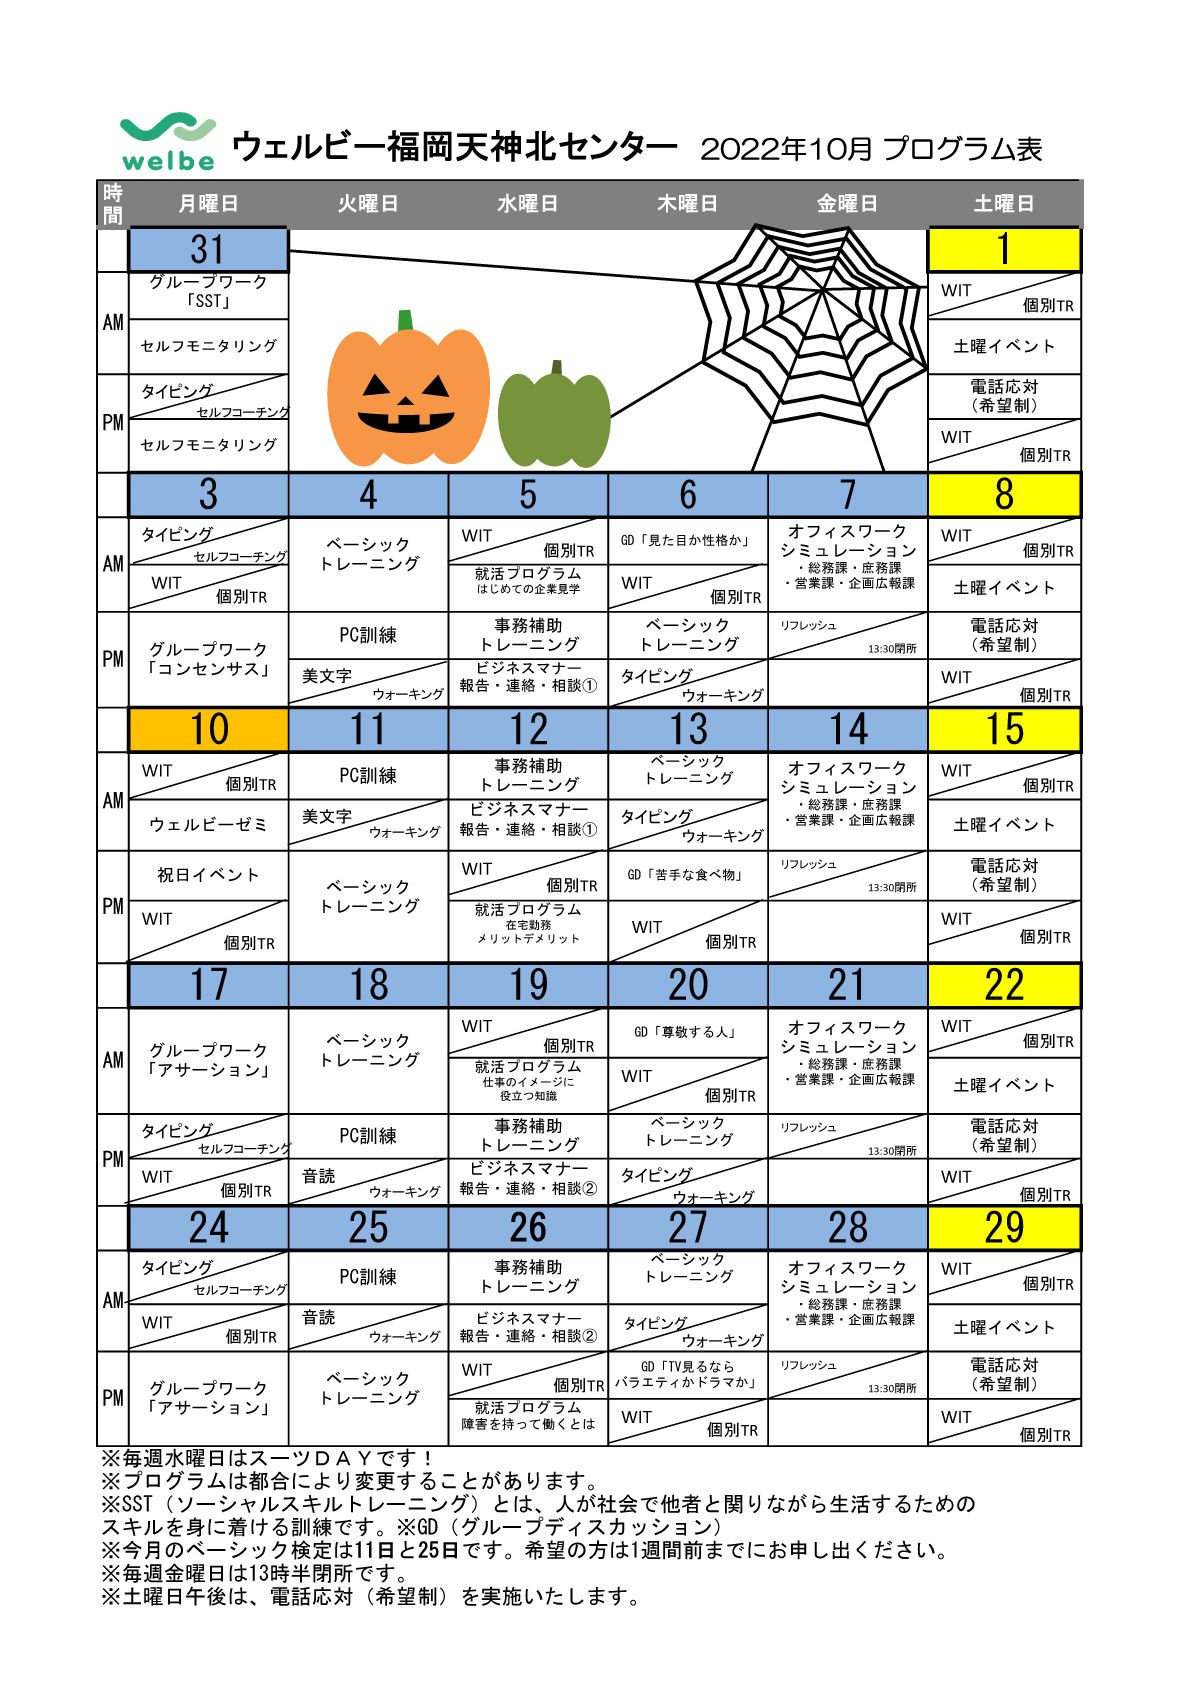 ウェルビー福岡天神北センター_2022年10月プログラム表